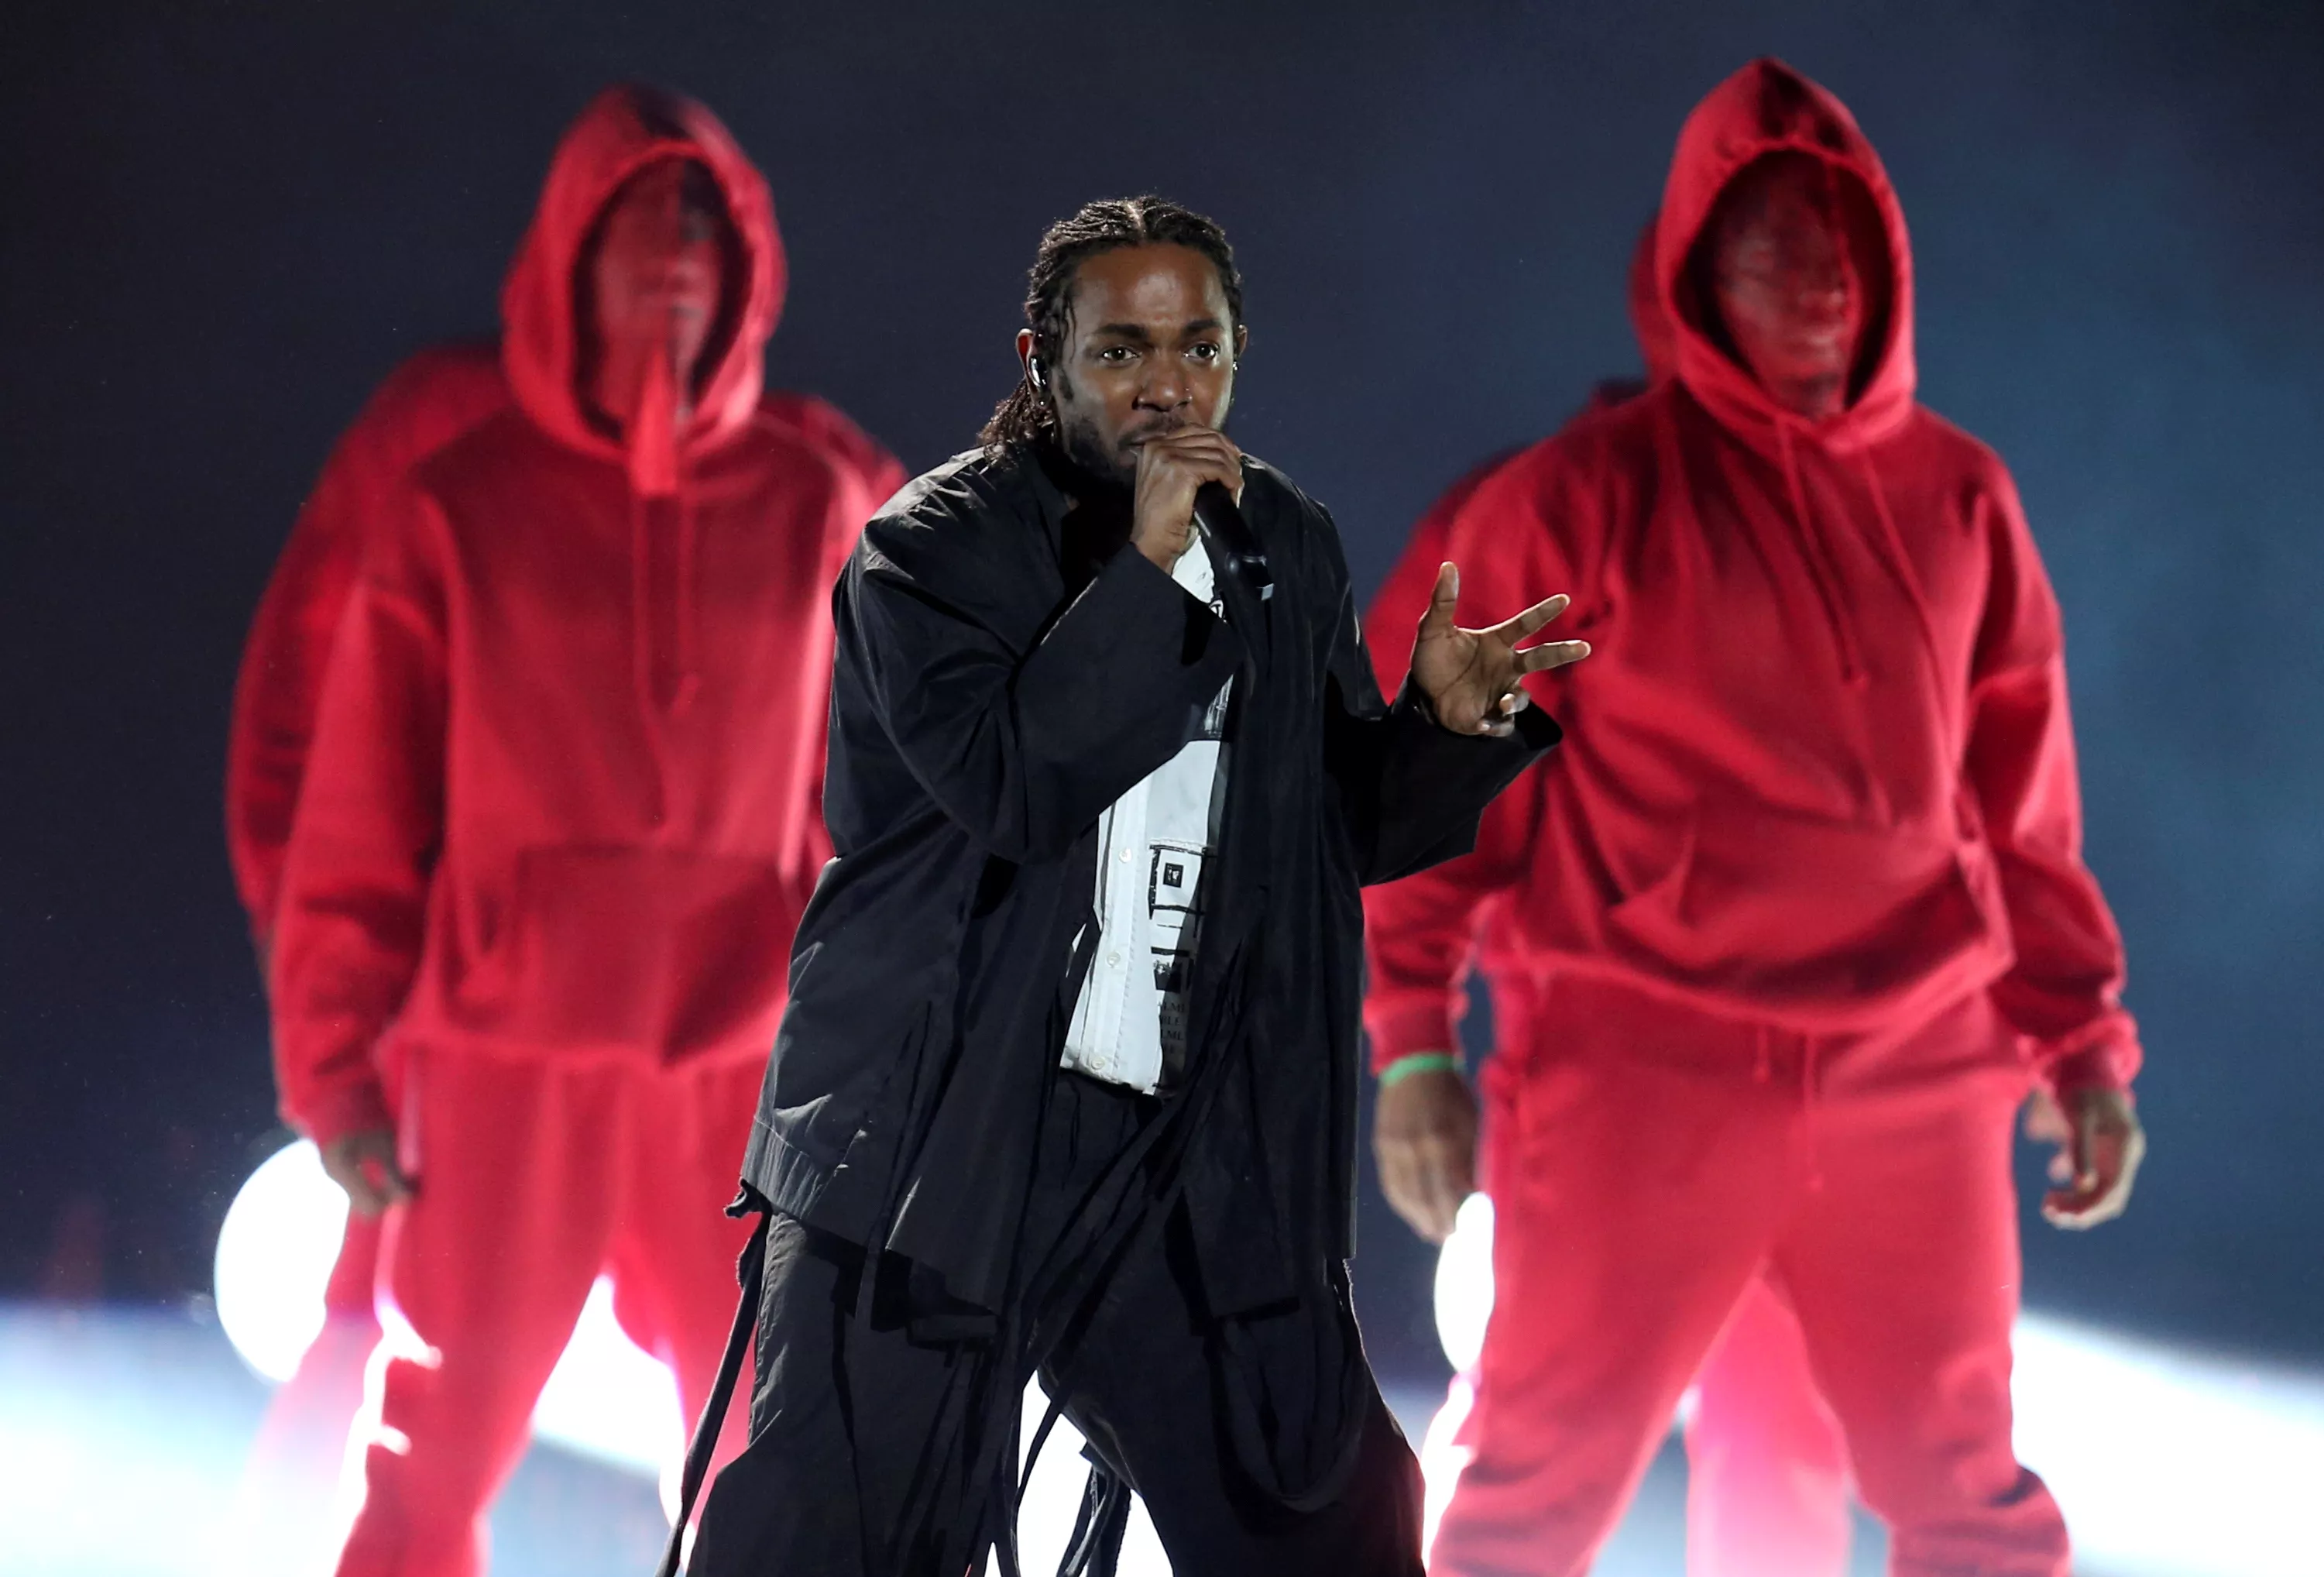 Kendrick ble sensurert ti ganger i løpet av én opptreden